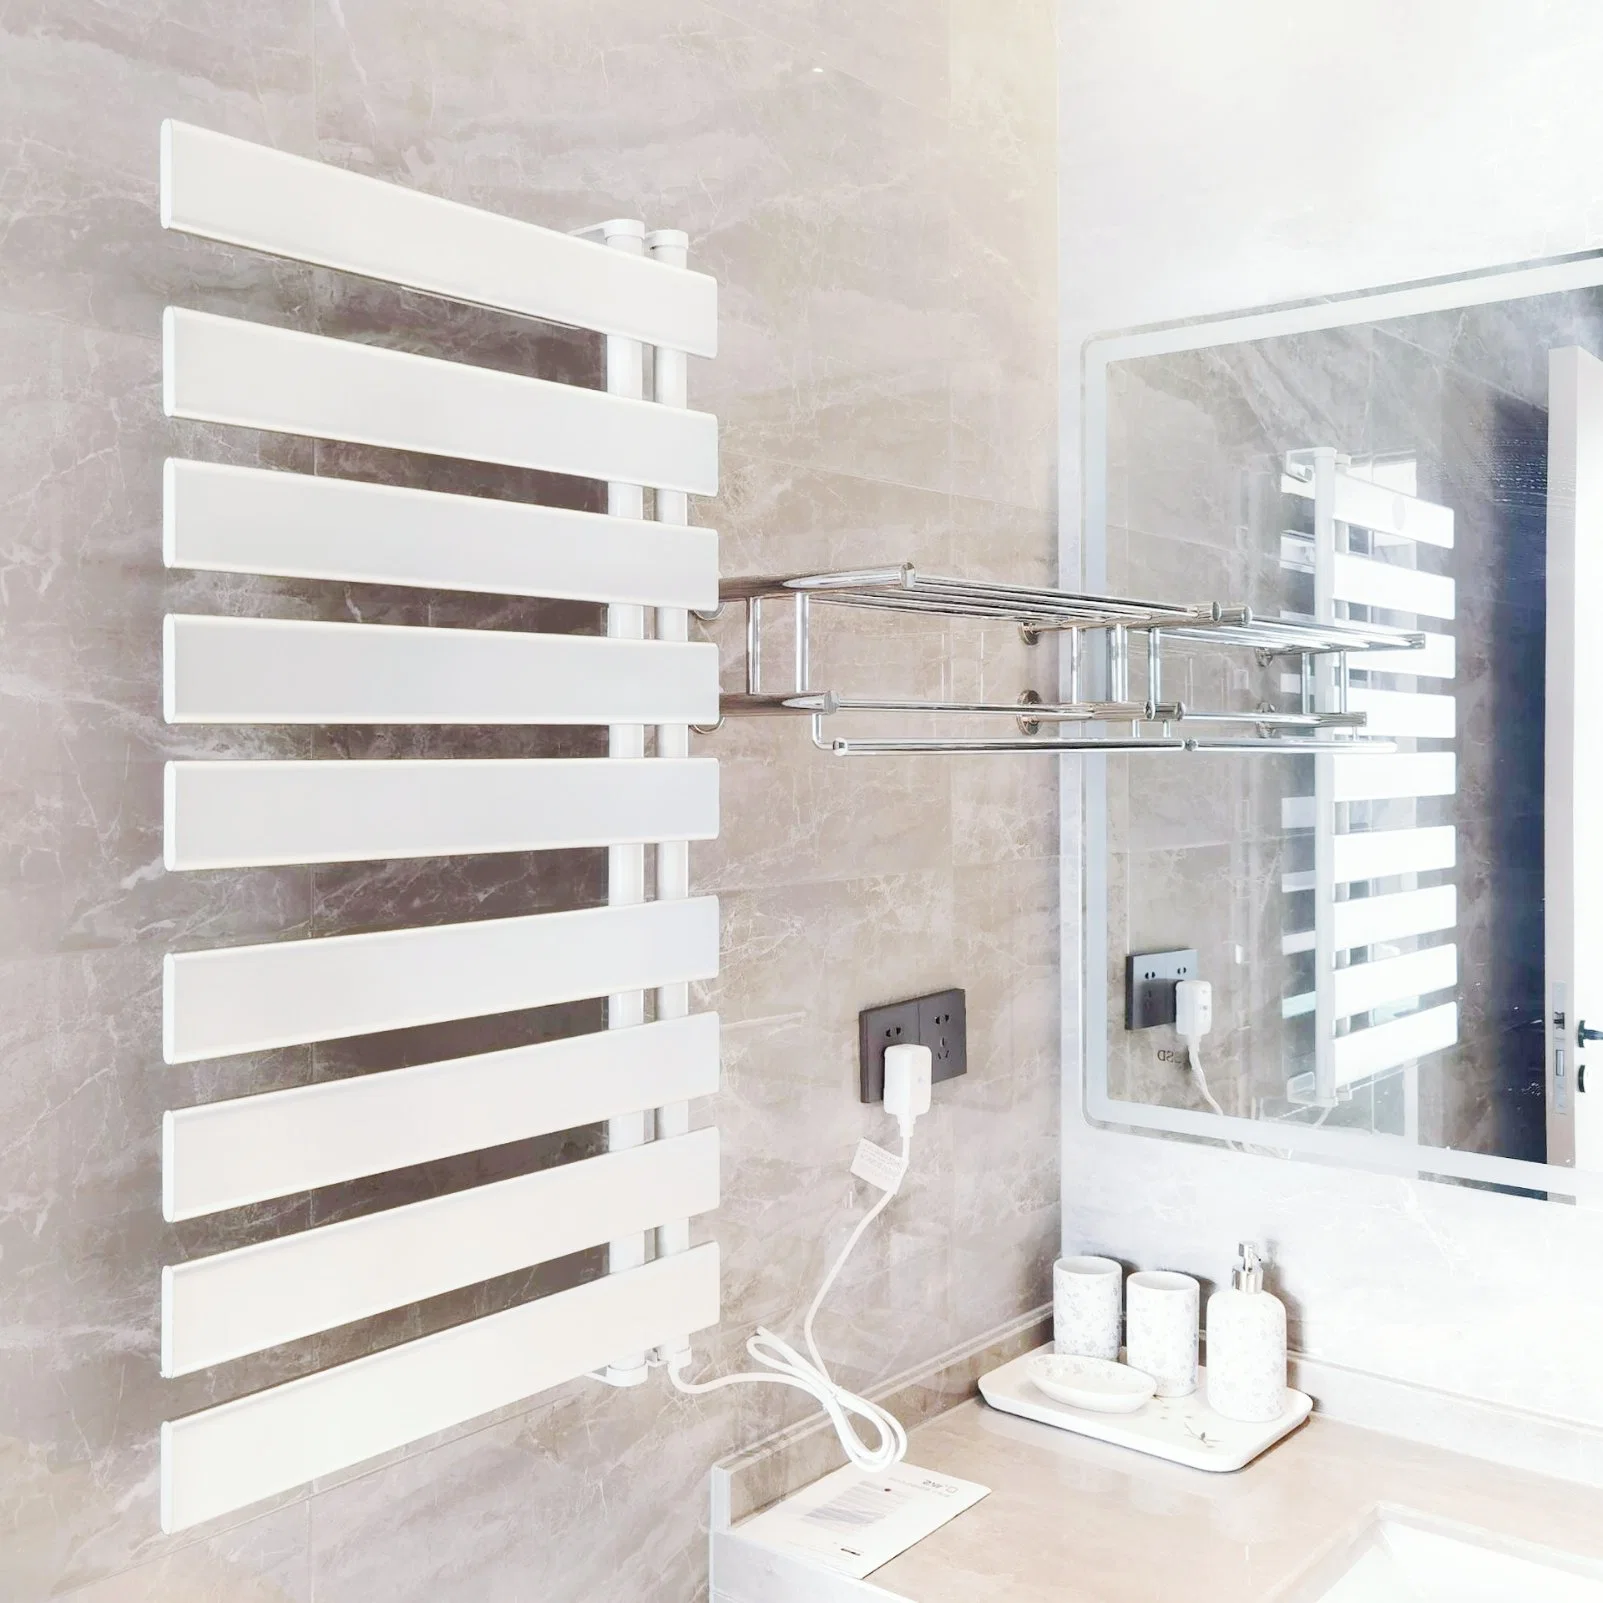 Ванная комната радиатора 600 мм высота индивидуального Designer радиатор центрального отопления полотенце для установки в стойку